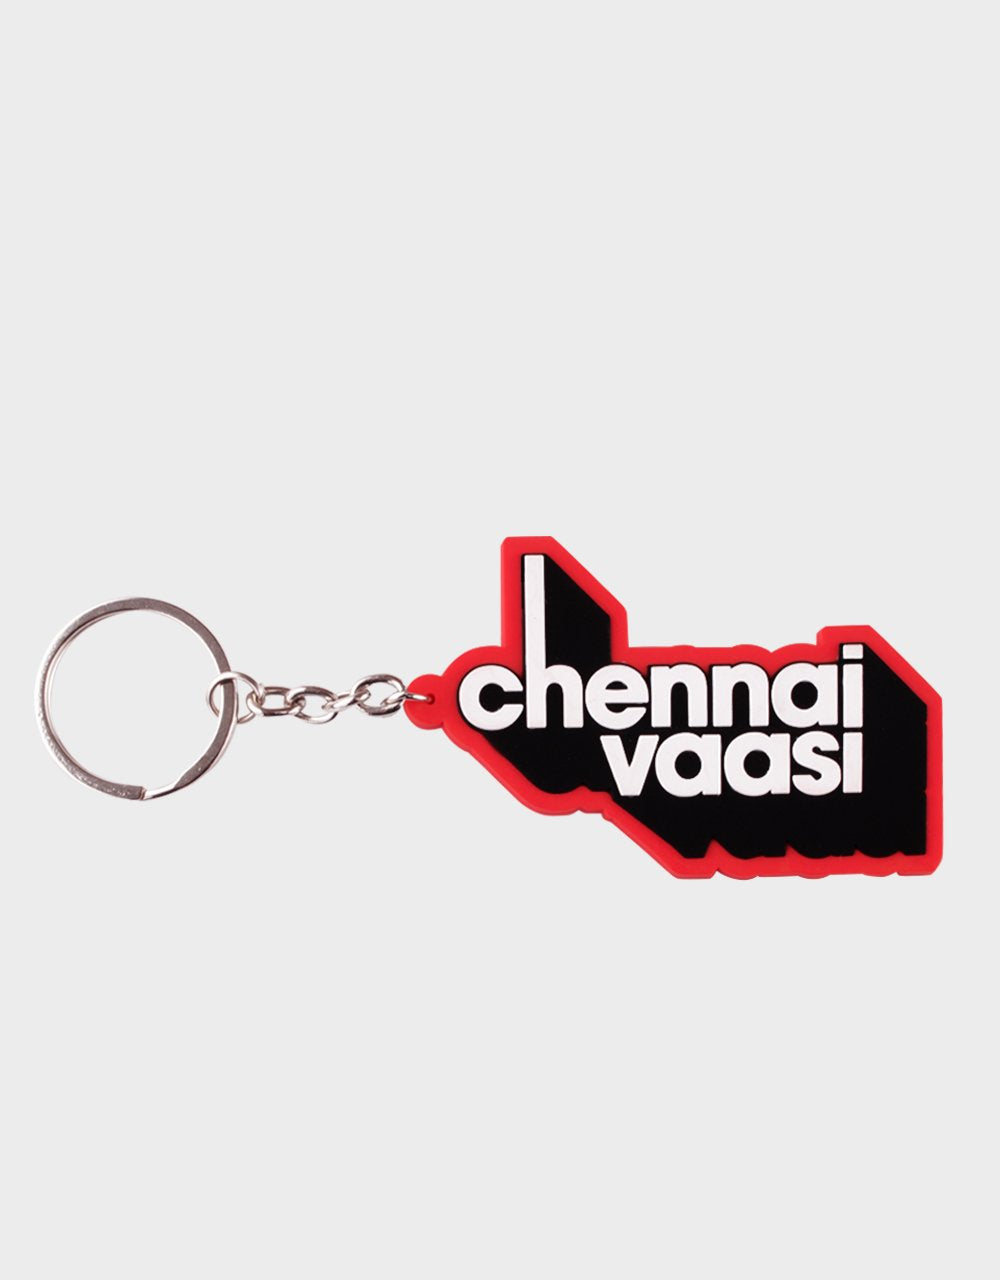 Chennai Vaasi Red Keychain - Angi | Tamil T-shirt | Chennai T-shirt